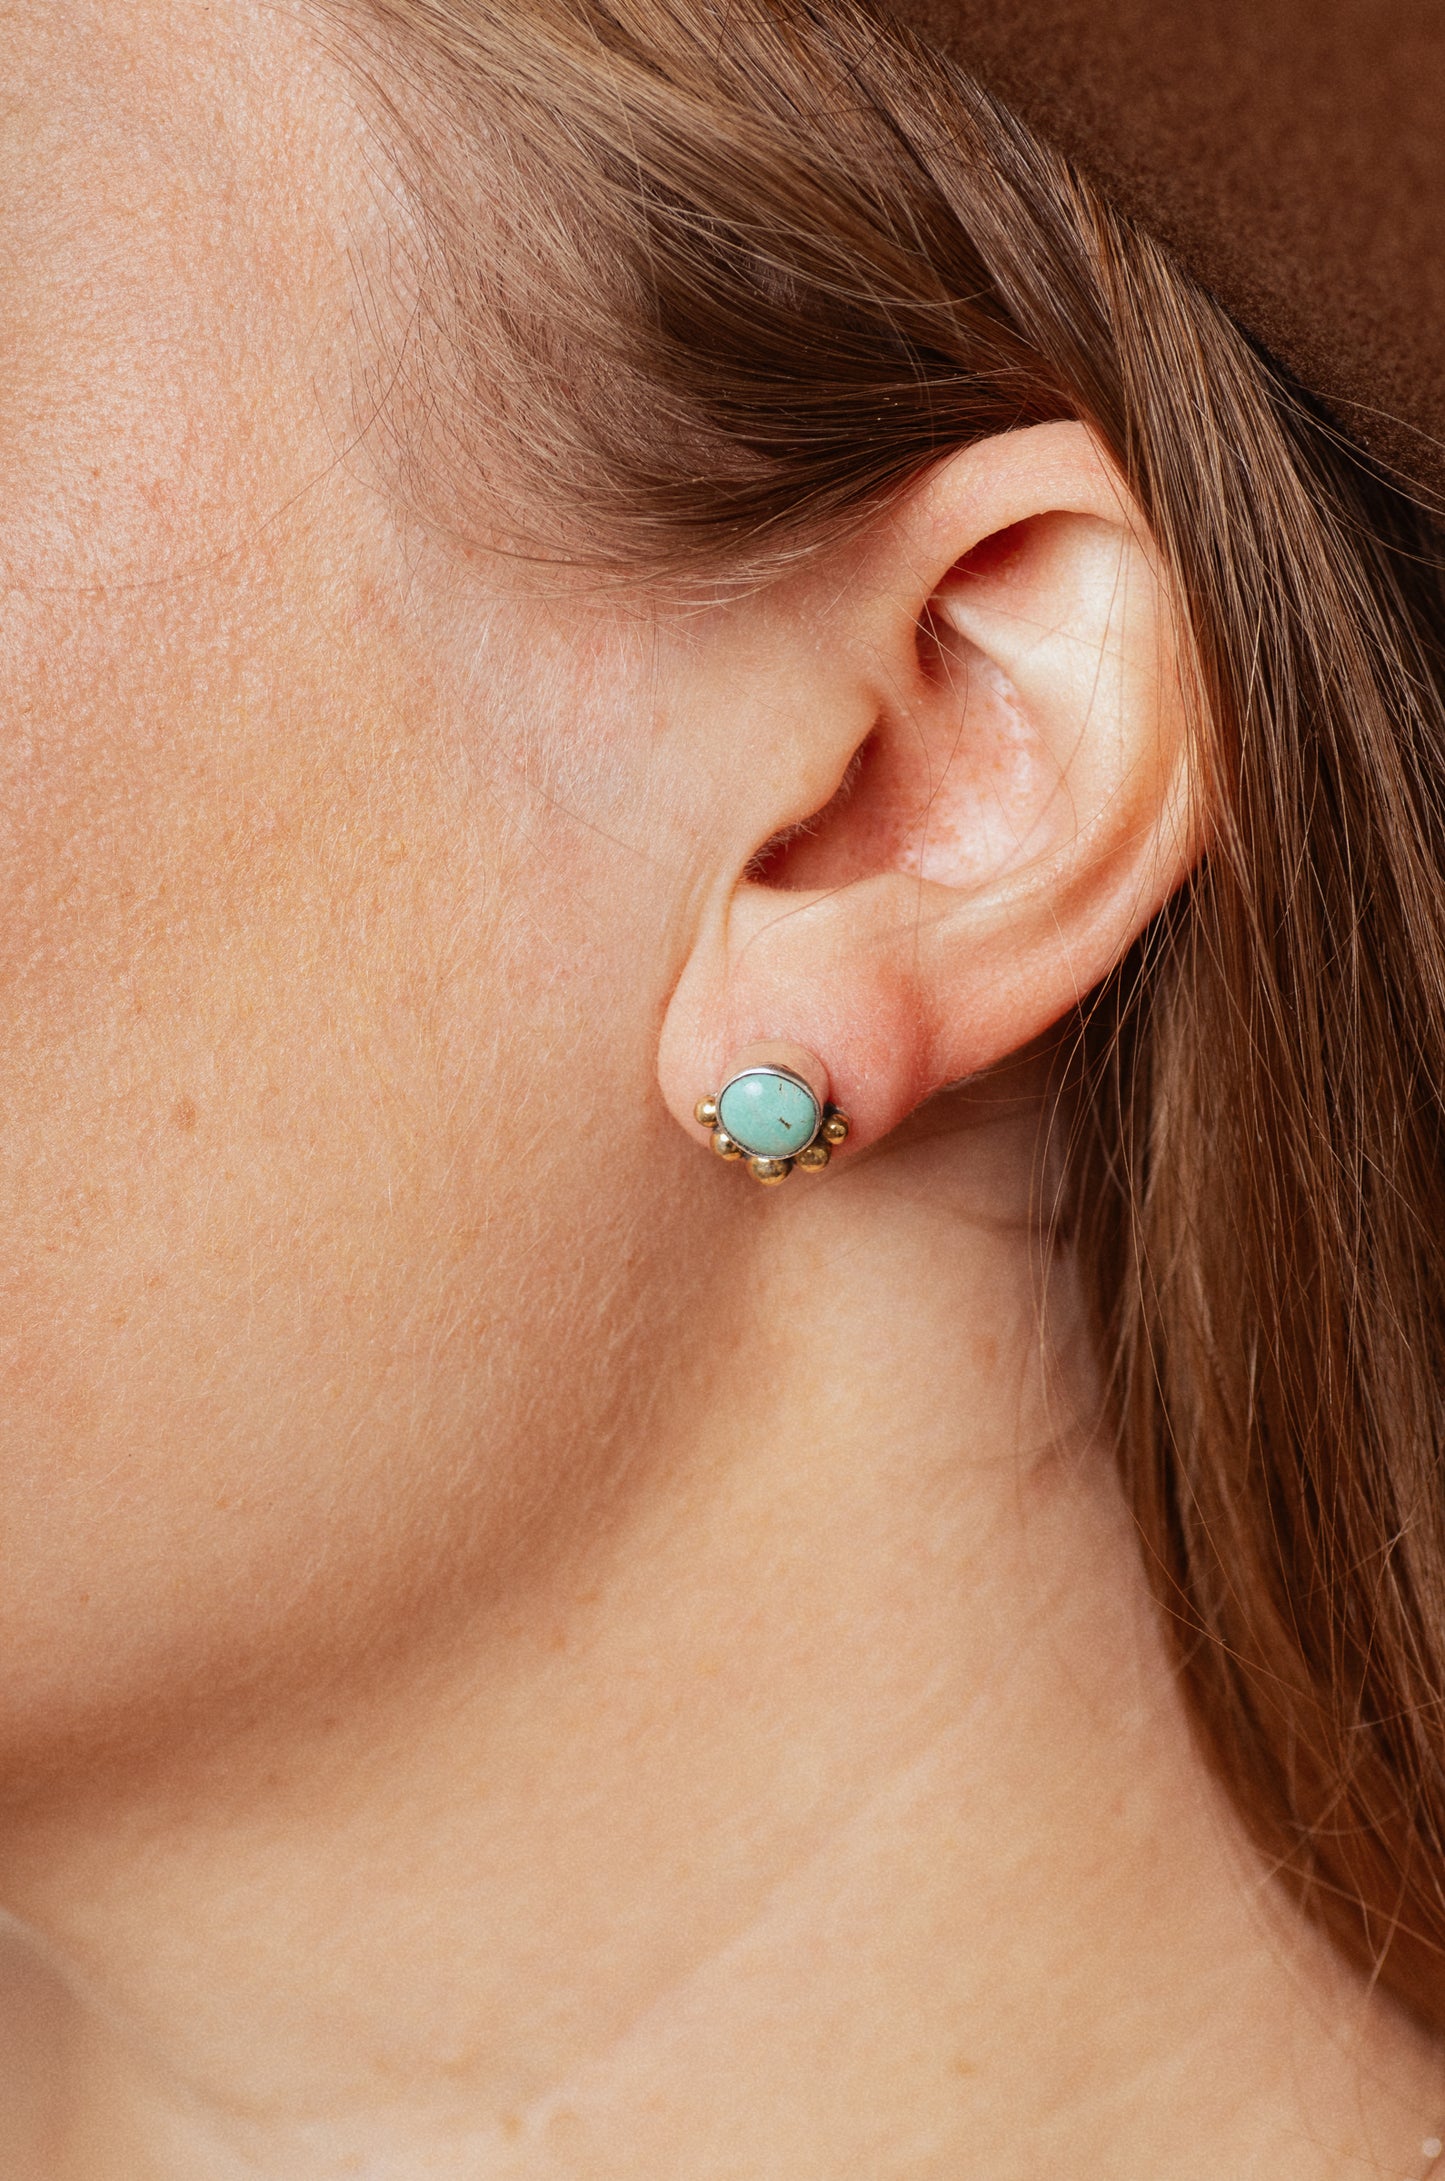 Turquoise Stud Earrings (A) ◇ Kingman Turquoise